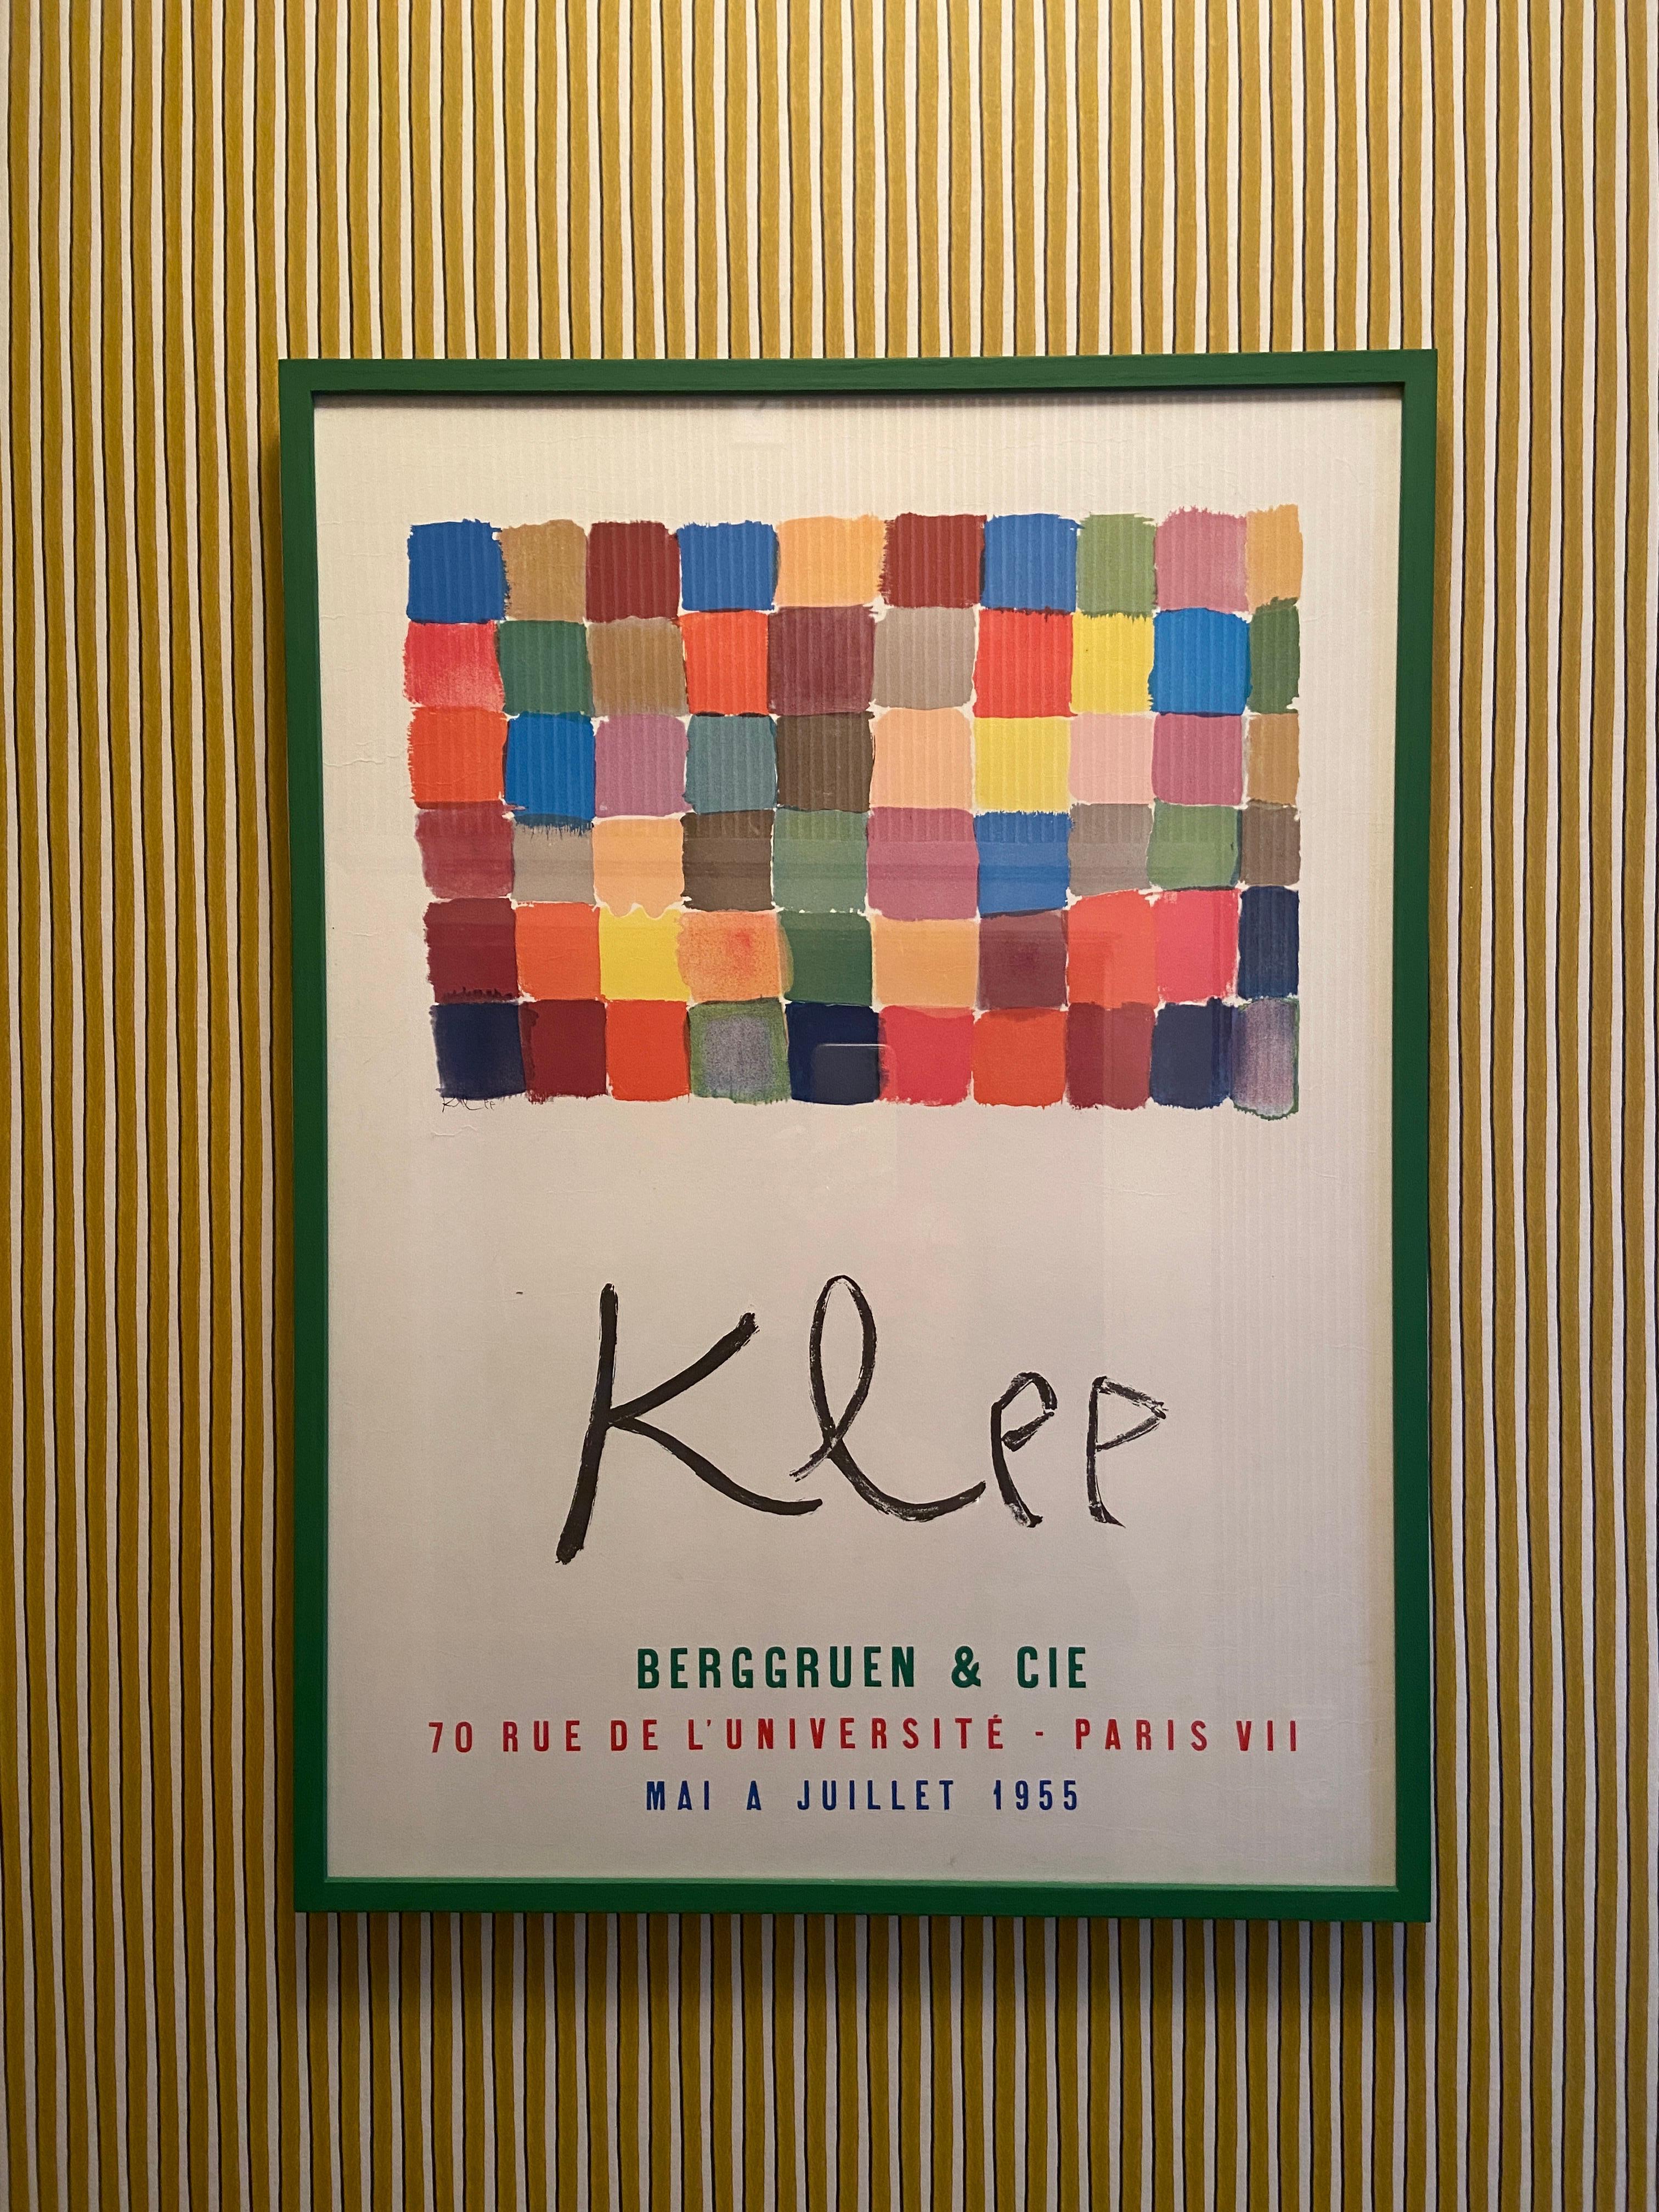 French Vintage Paul Klee “Klee” Berggruen et Cie Exhibition Poster, France, 1955 For Sale